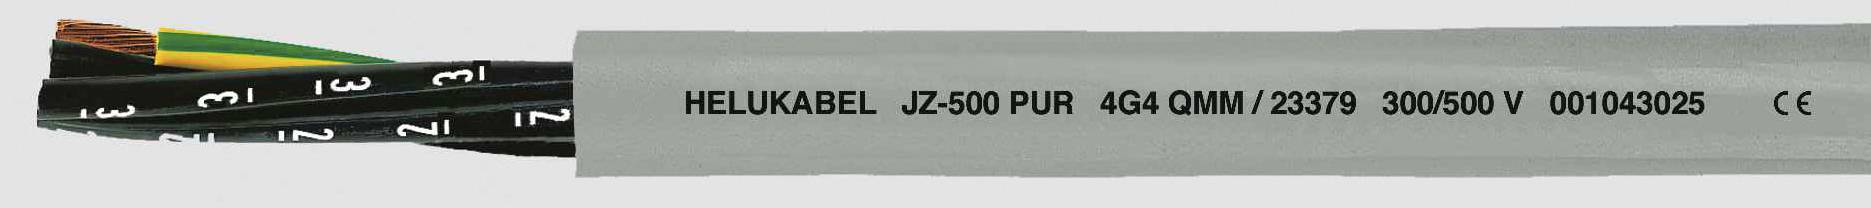 HELUKABEL JZ-500 PUR Steuerleitung 5 G 2.50 mm² Grau 23376-1000 1000 m